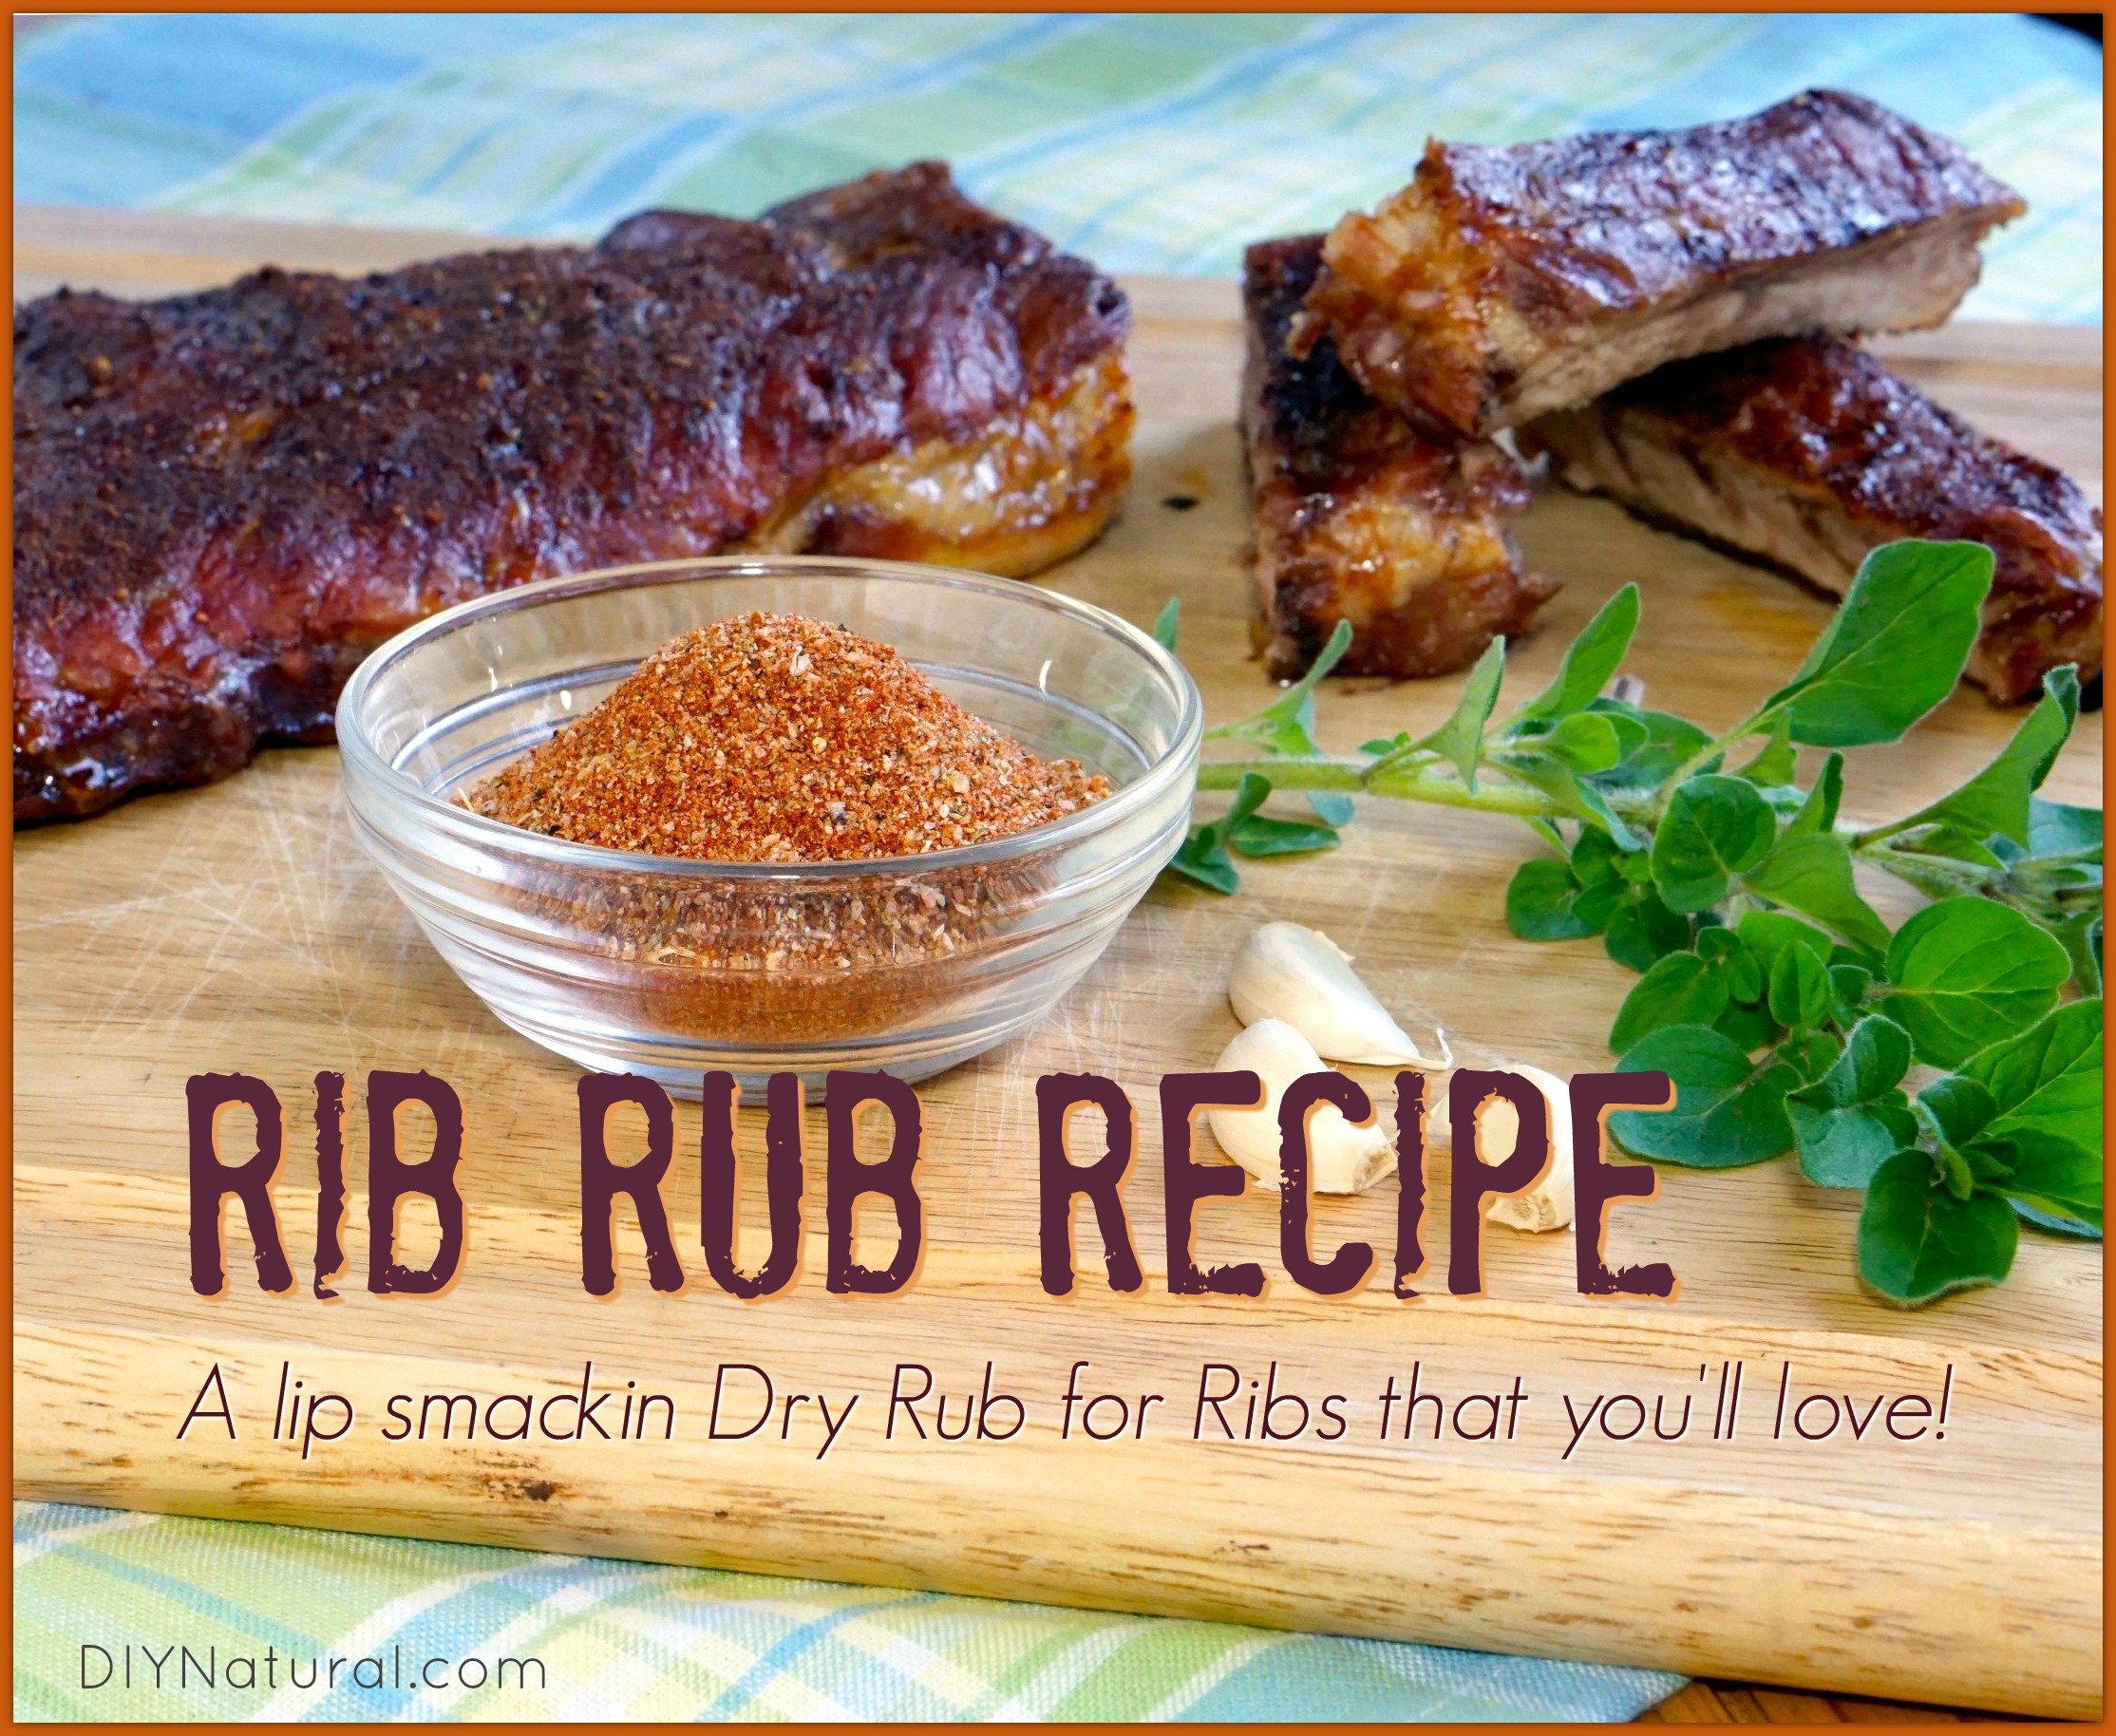 træfning Elendighed Ups Dry Rub for Ribs: Homemade Rib Rub Recipe with No Sugar